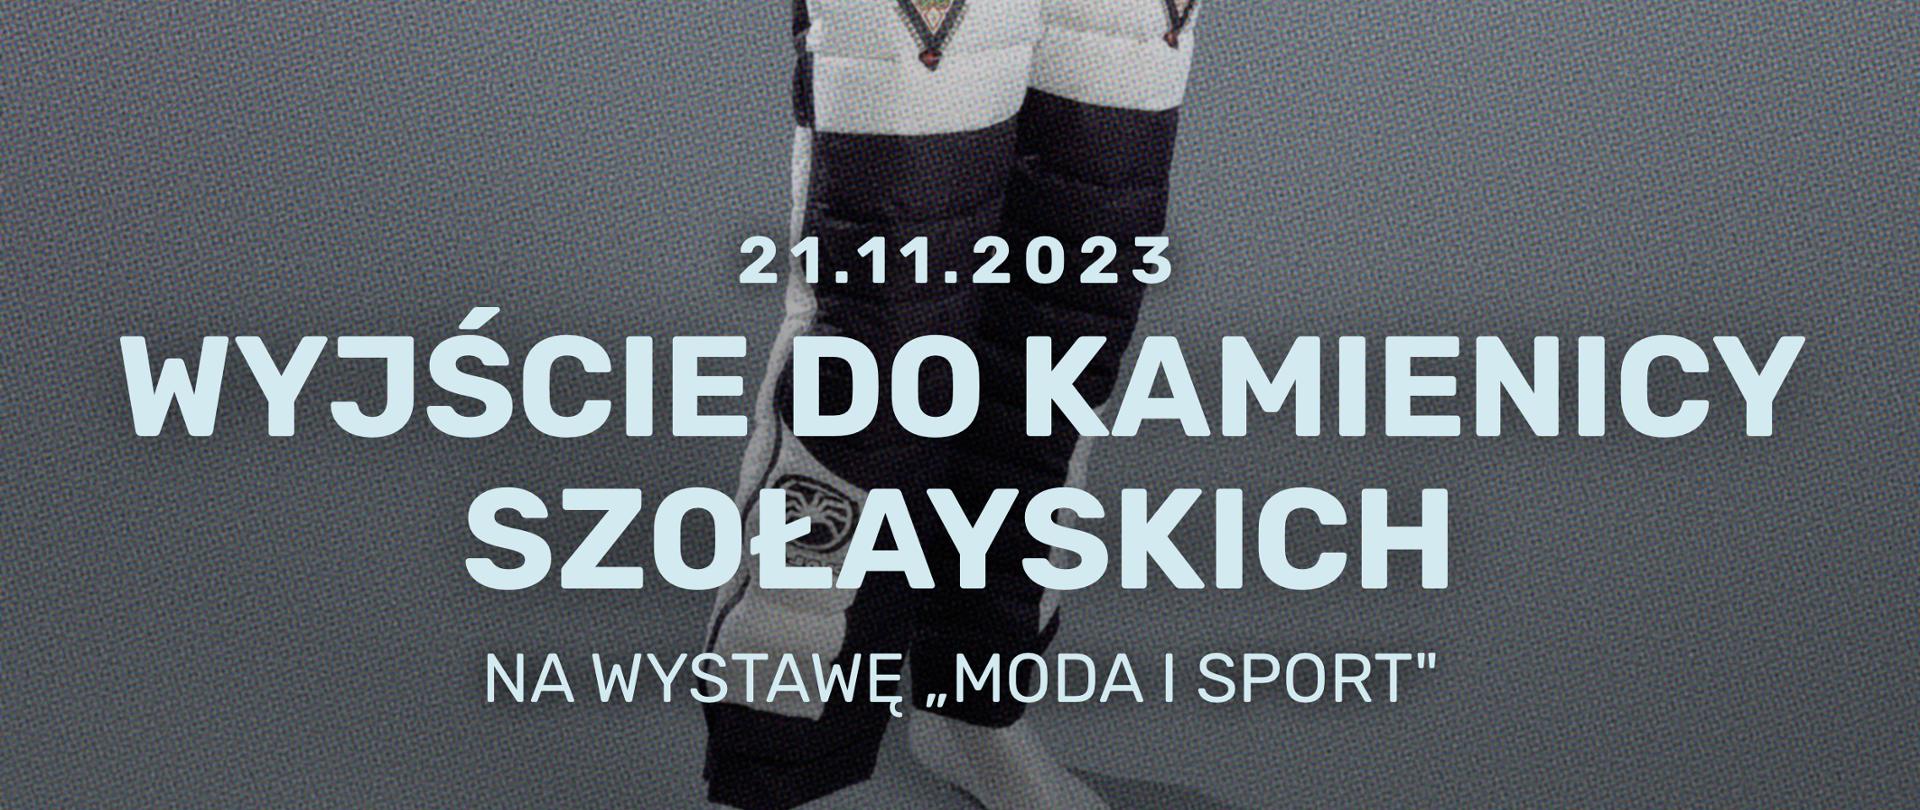 Plakat informujący o wyjściu na wystawę "Moda i sport" do Kamienicy Szołayskich w dniu 21.11.2023. Na szarym tle fotografia manekina w biało - czarnym kombinezonie zimowym z góralskimi motywami. Informacja tekstowa w kolorze białym.